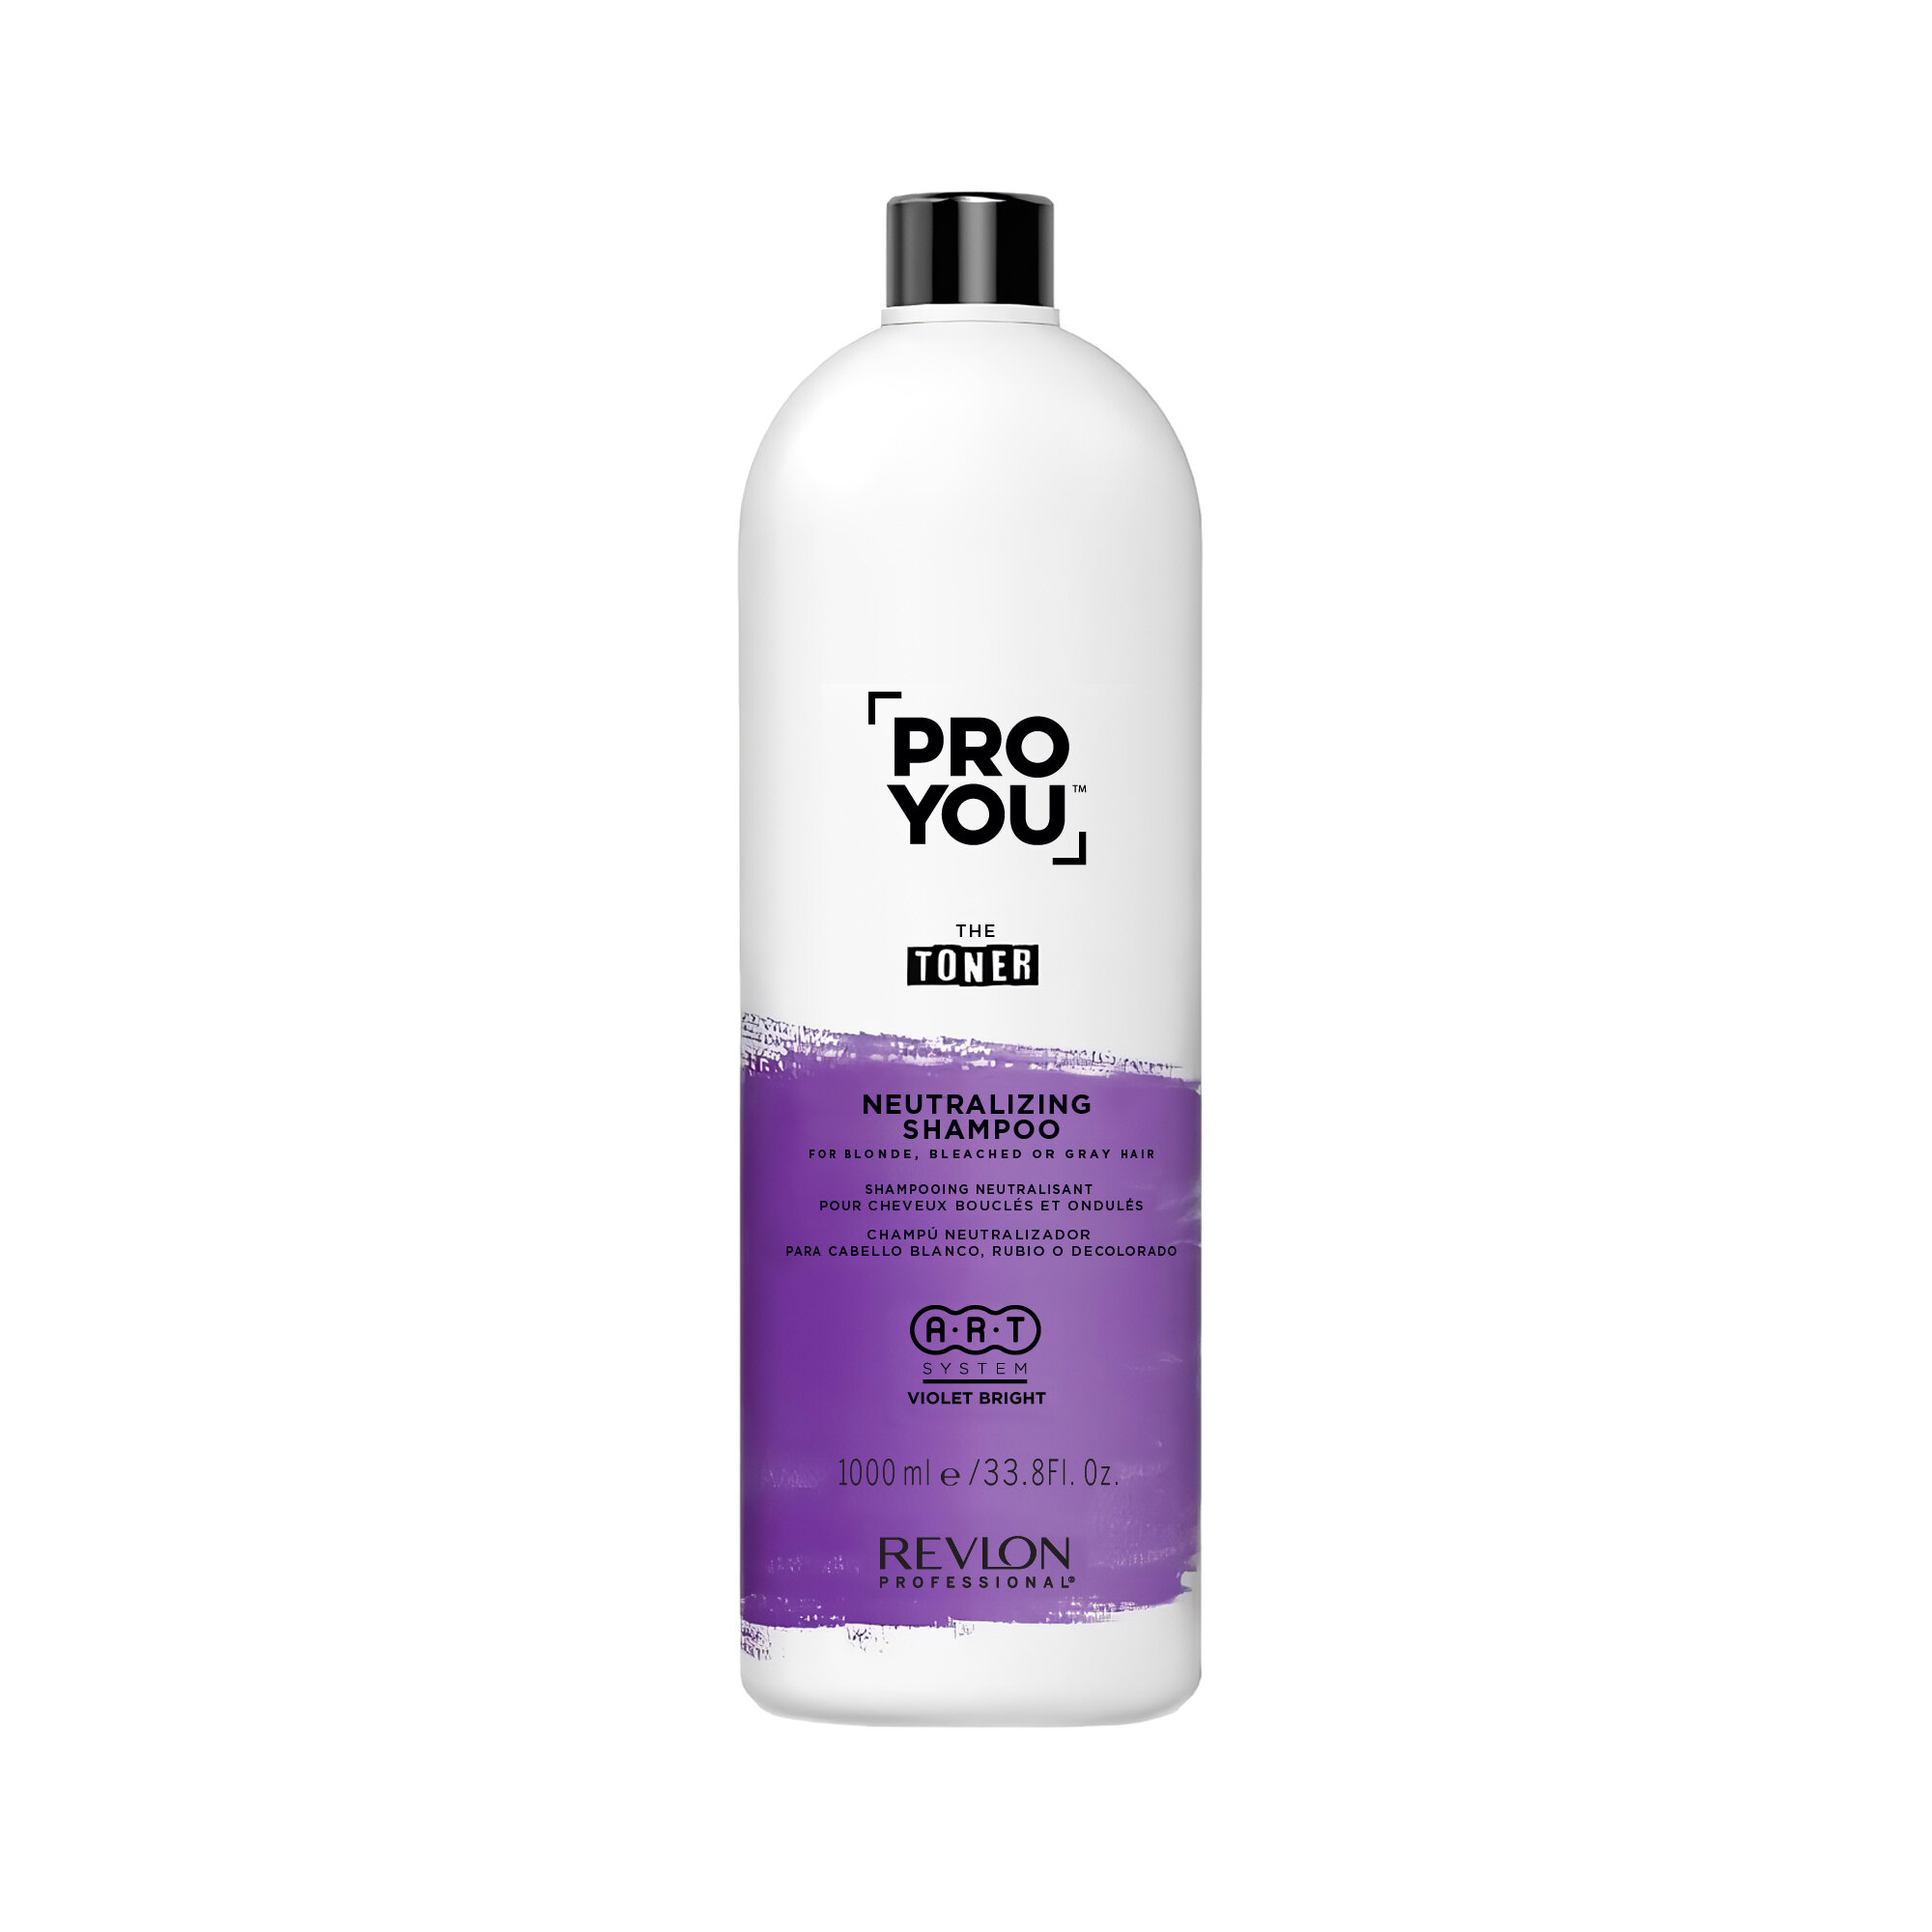 Шампунь REVLON для светлых, обесцвеченных или седых волос Neutralizing Shampoo, 1000 мл